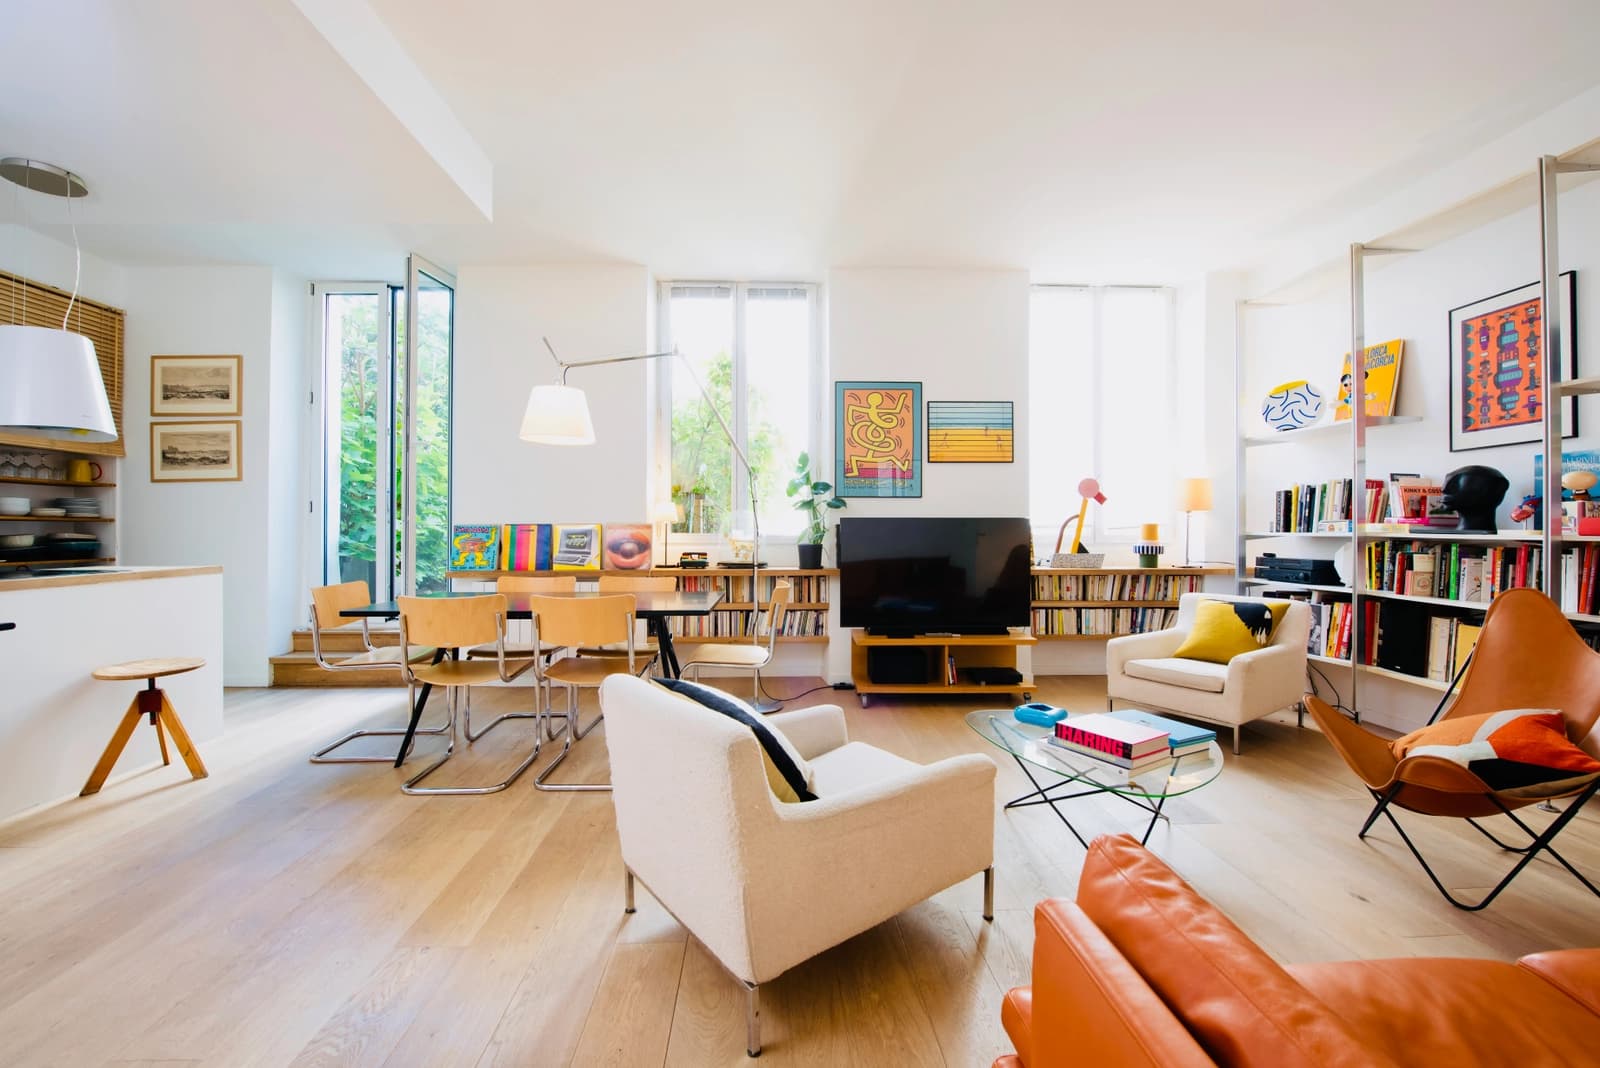 Living room in Country living in Paris!  Bright, quiet loft - 1